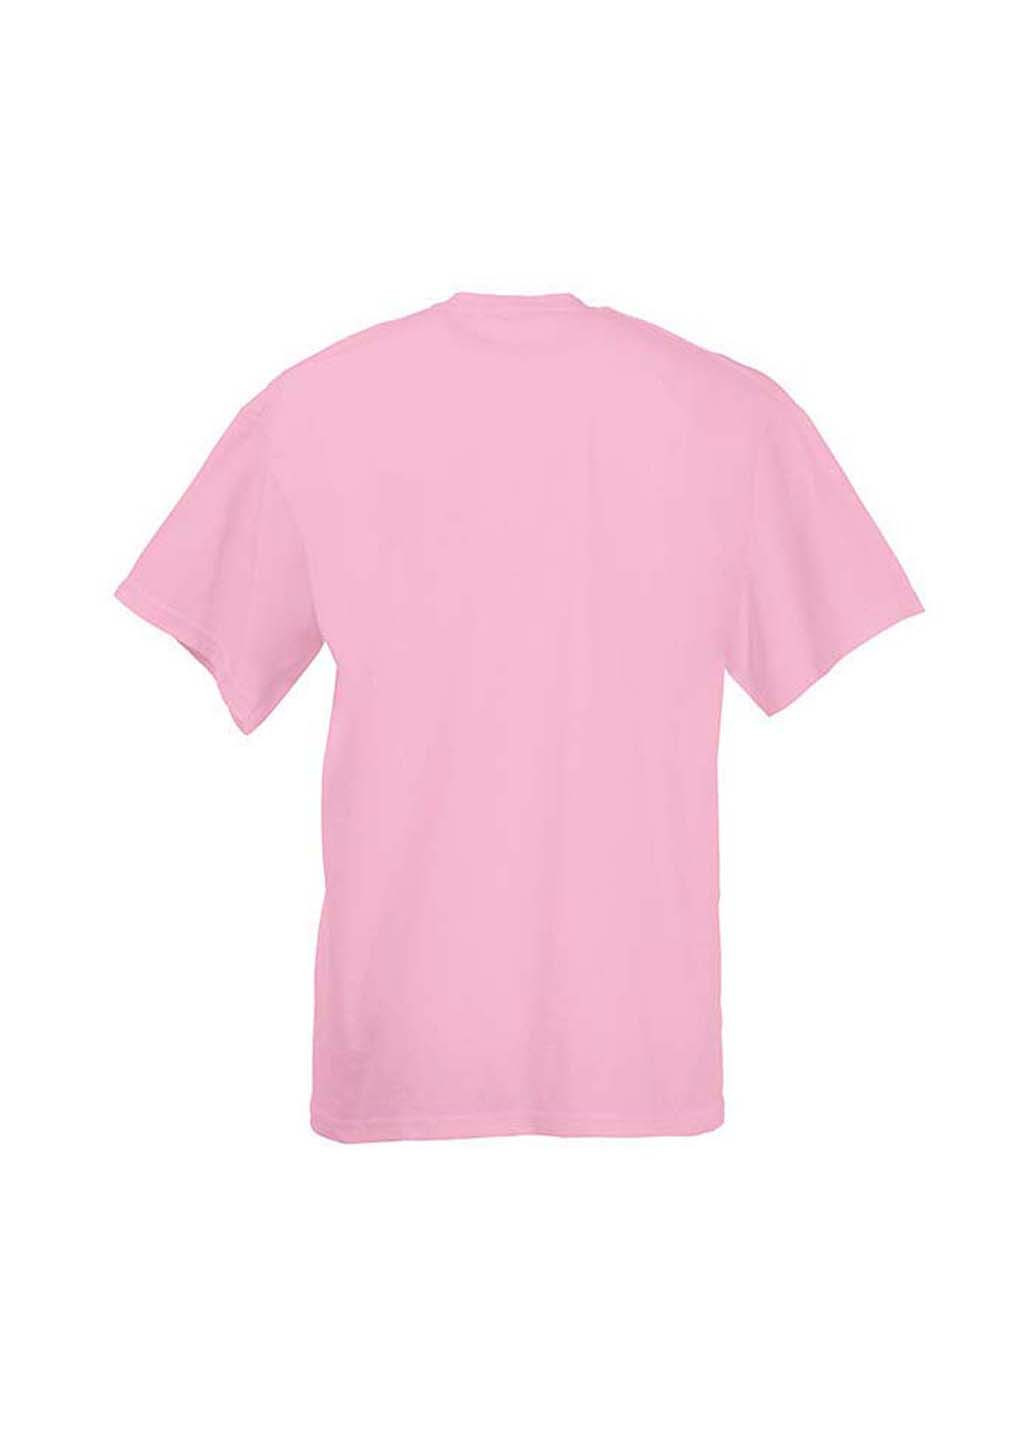 Розовая демисезонная футболка Fruit of the Loom D061033052164